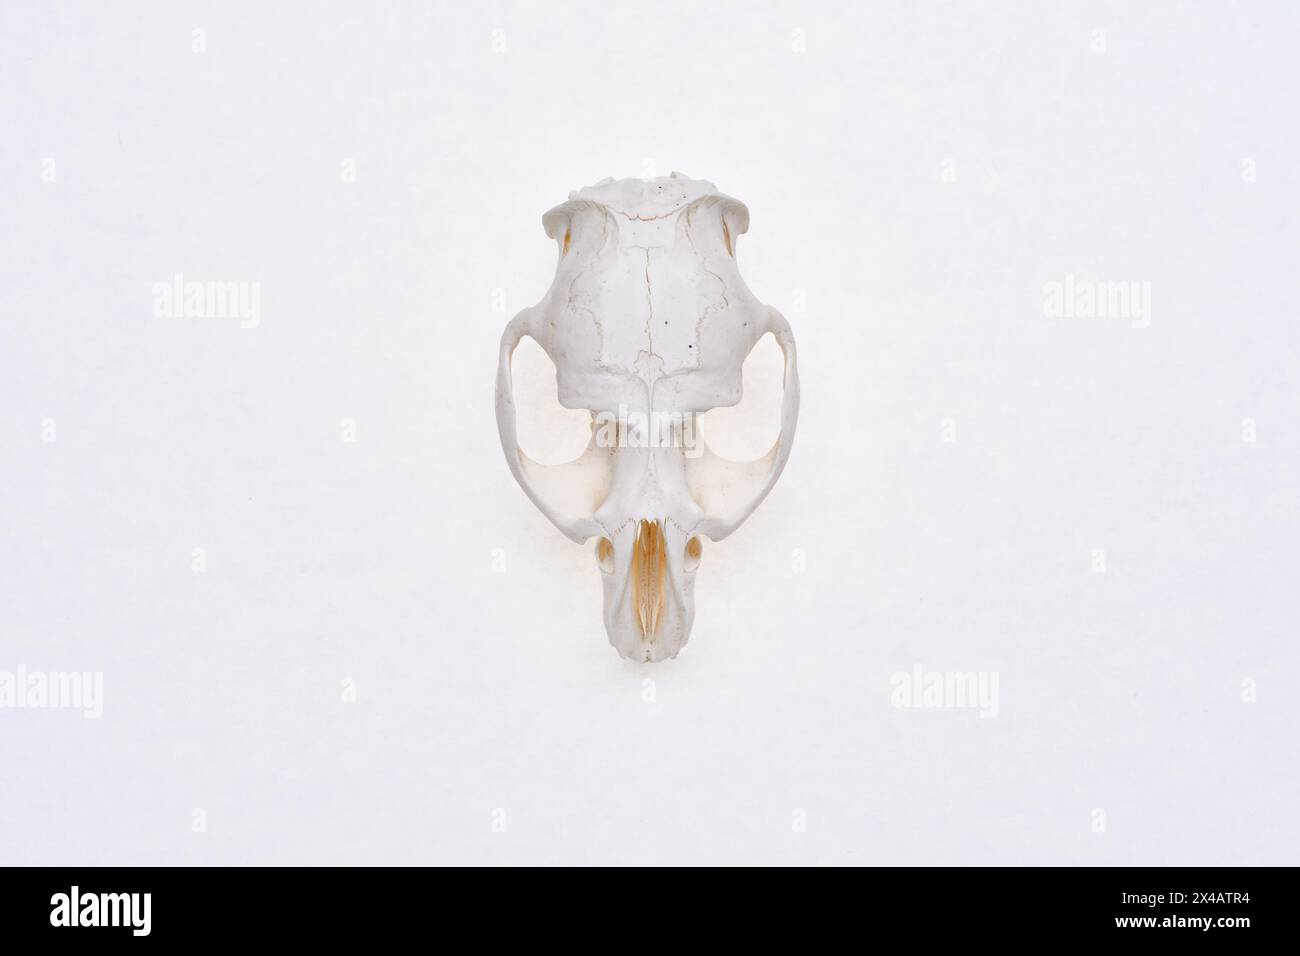 Vista superiore del cranio lepre su sfondo bianco. Roditore - Lepus timidus. Osso della testa di un piccolo animale. Foto Stock